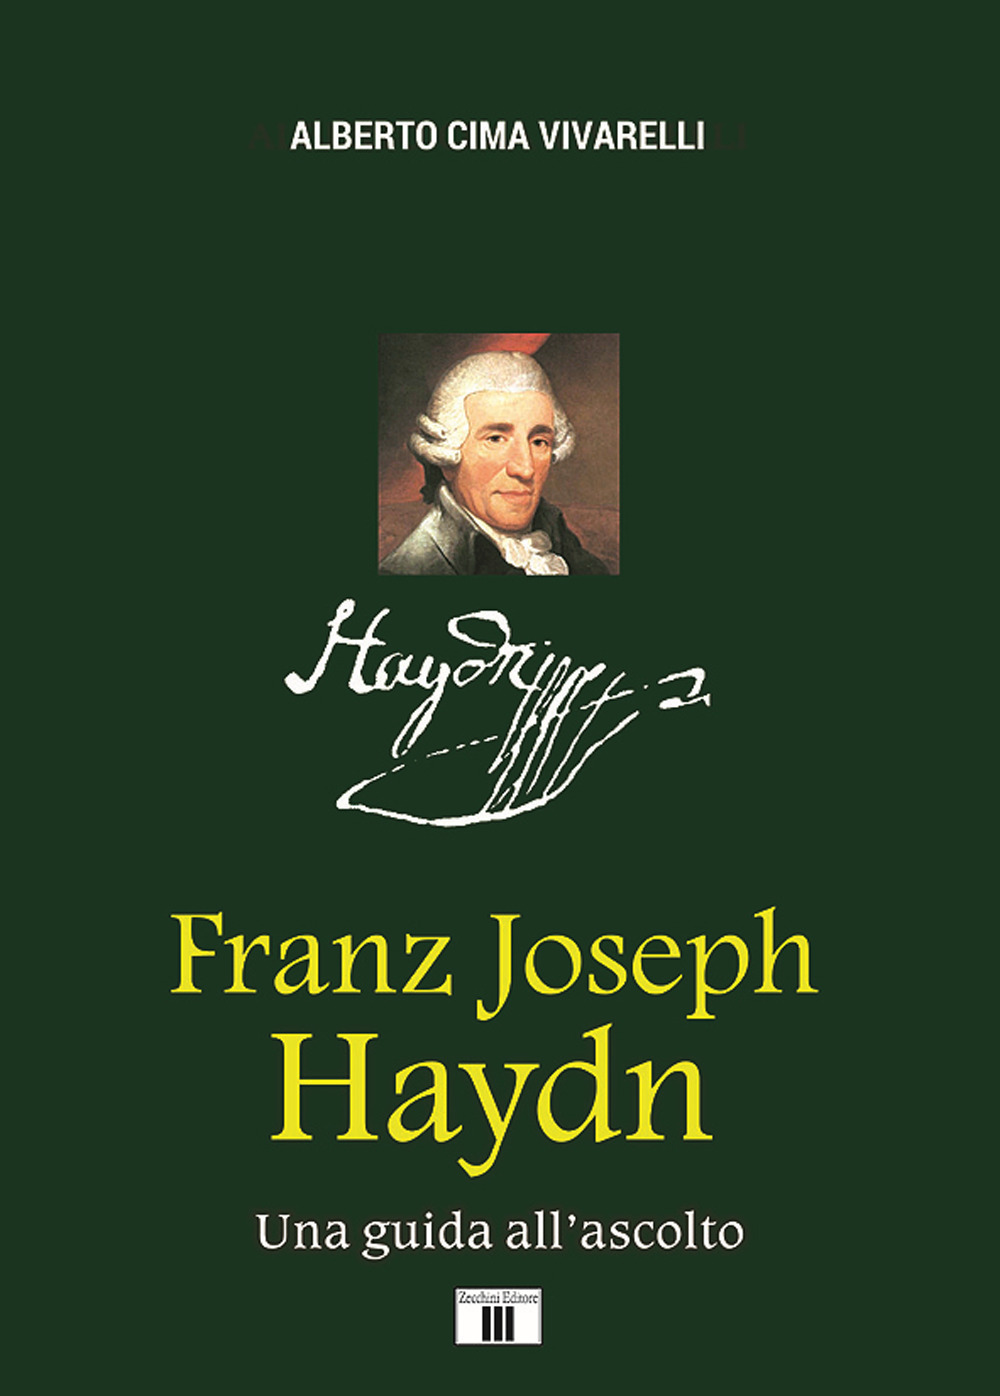 Libri Cima Vivarelli Alberto - Franz Joseph Haydn. Una Guida All'ascolto NUOVO SIGILLATO, EDIZIONE DEL 01/05/2020 SUBITO DISPONIBILE